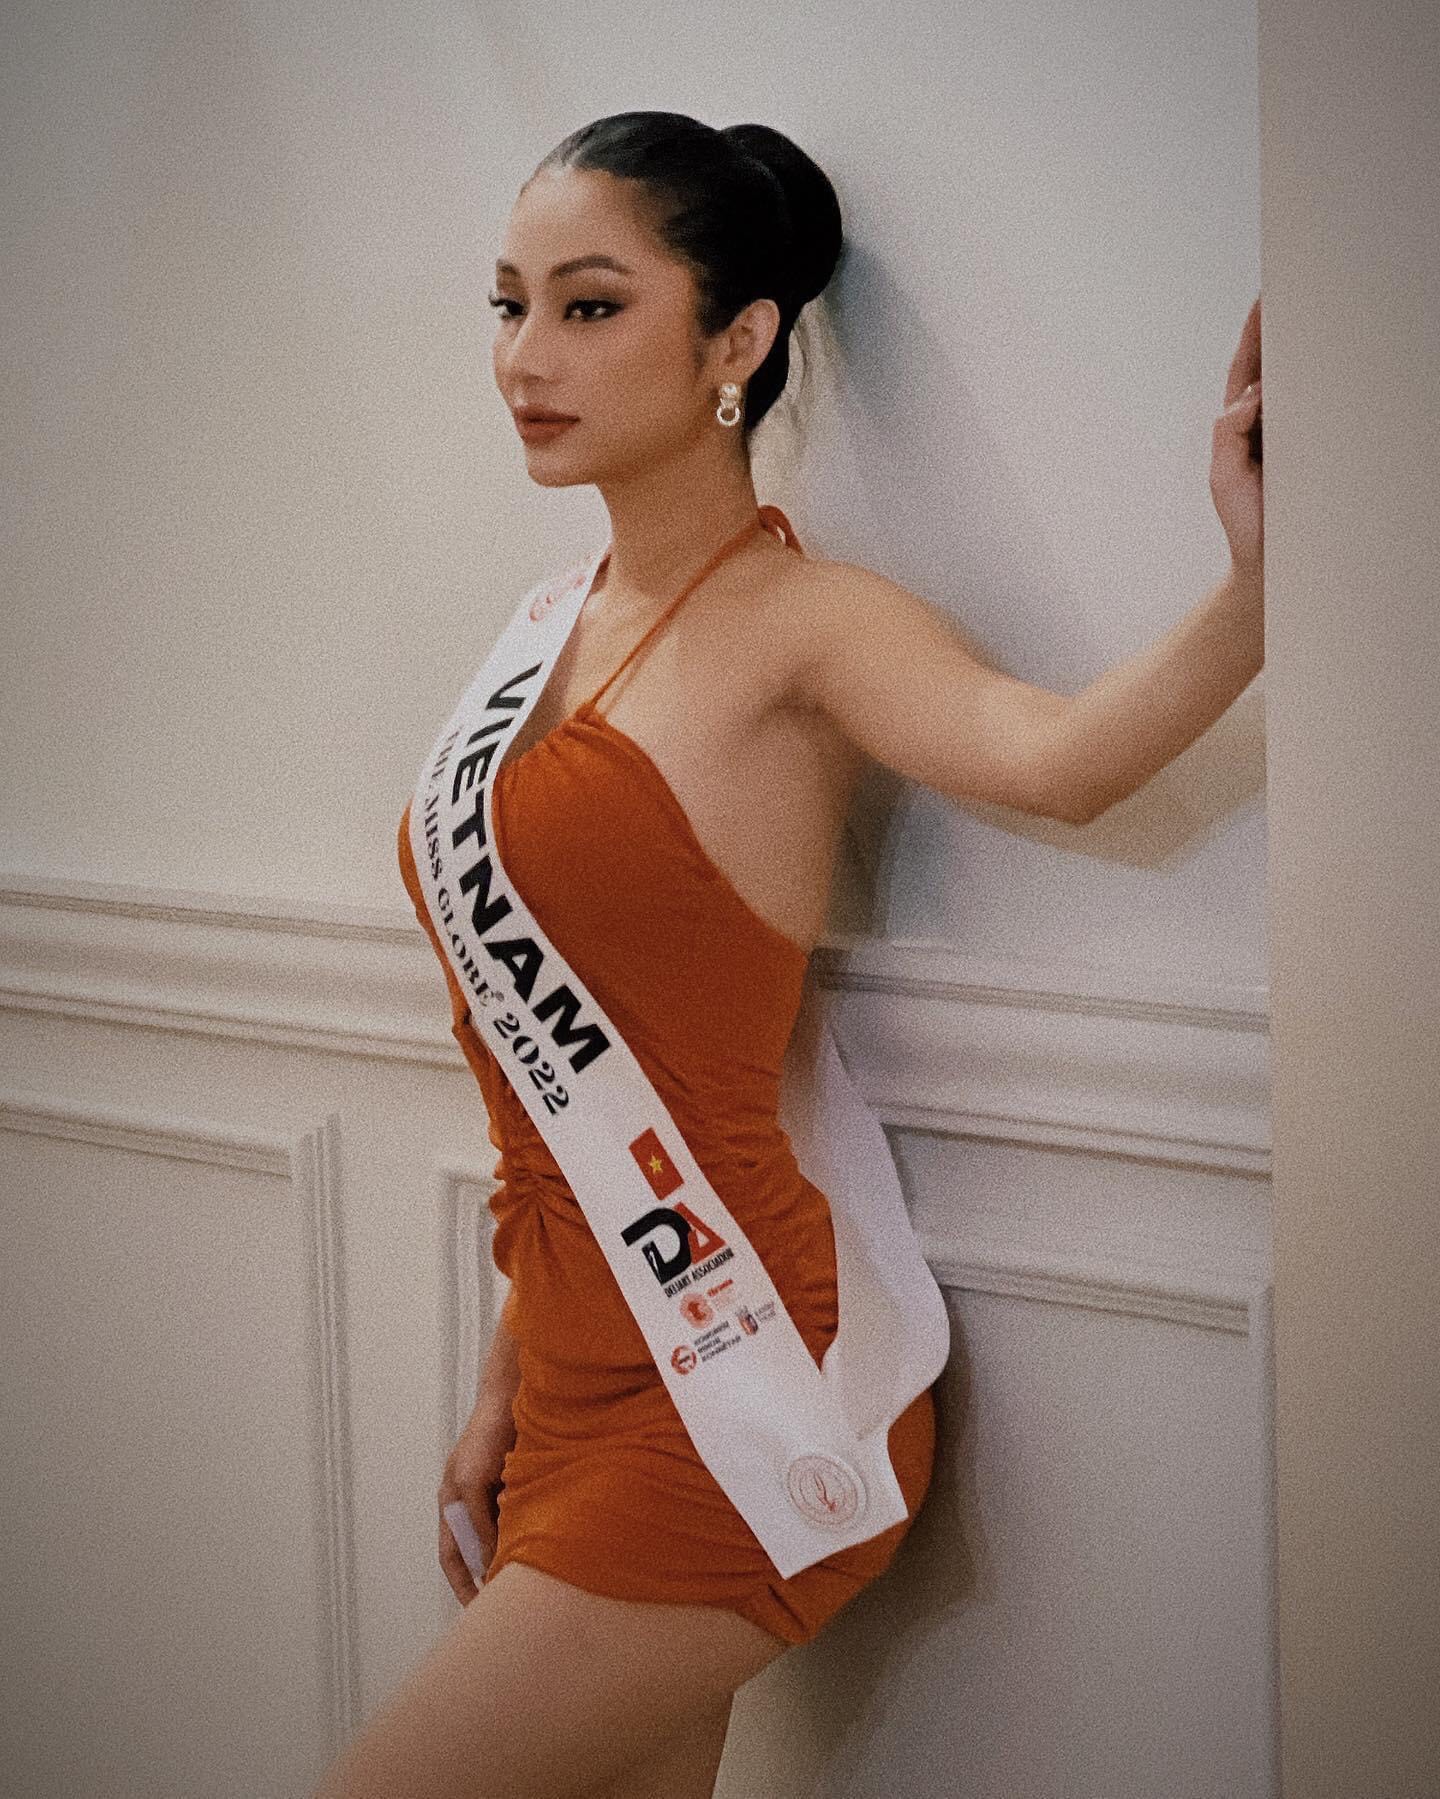 Lâm Thu Hồng bị thất lạc hành lý, 4 ngày chỉ mặc duy nhất một bộ đồ khi đến Dubai thi The Miss Globe 2022 - Ảnh 4.